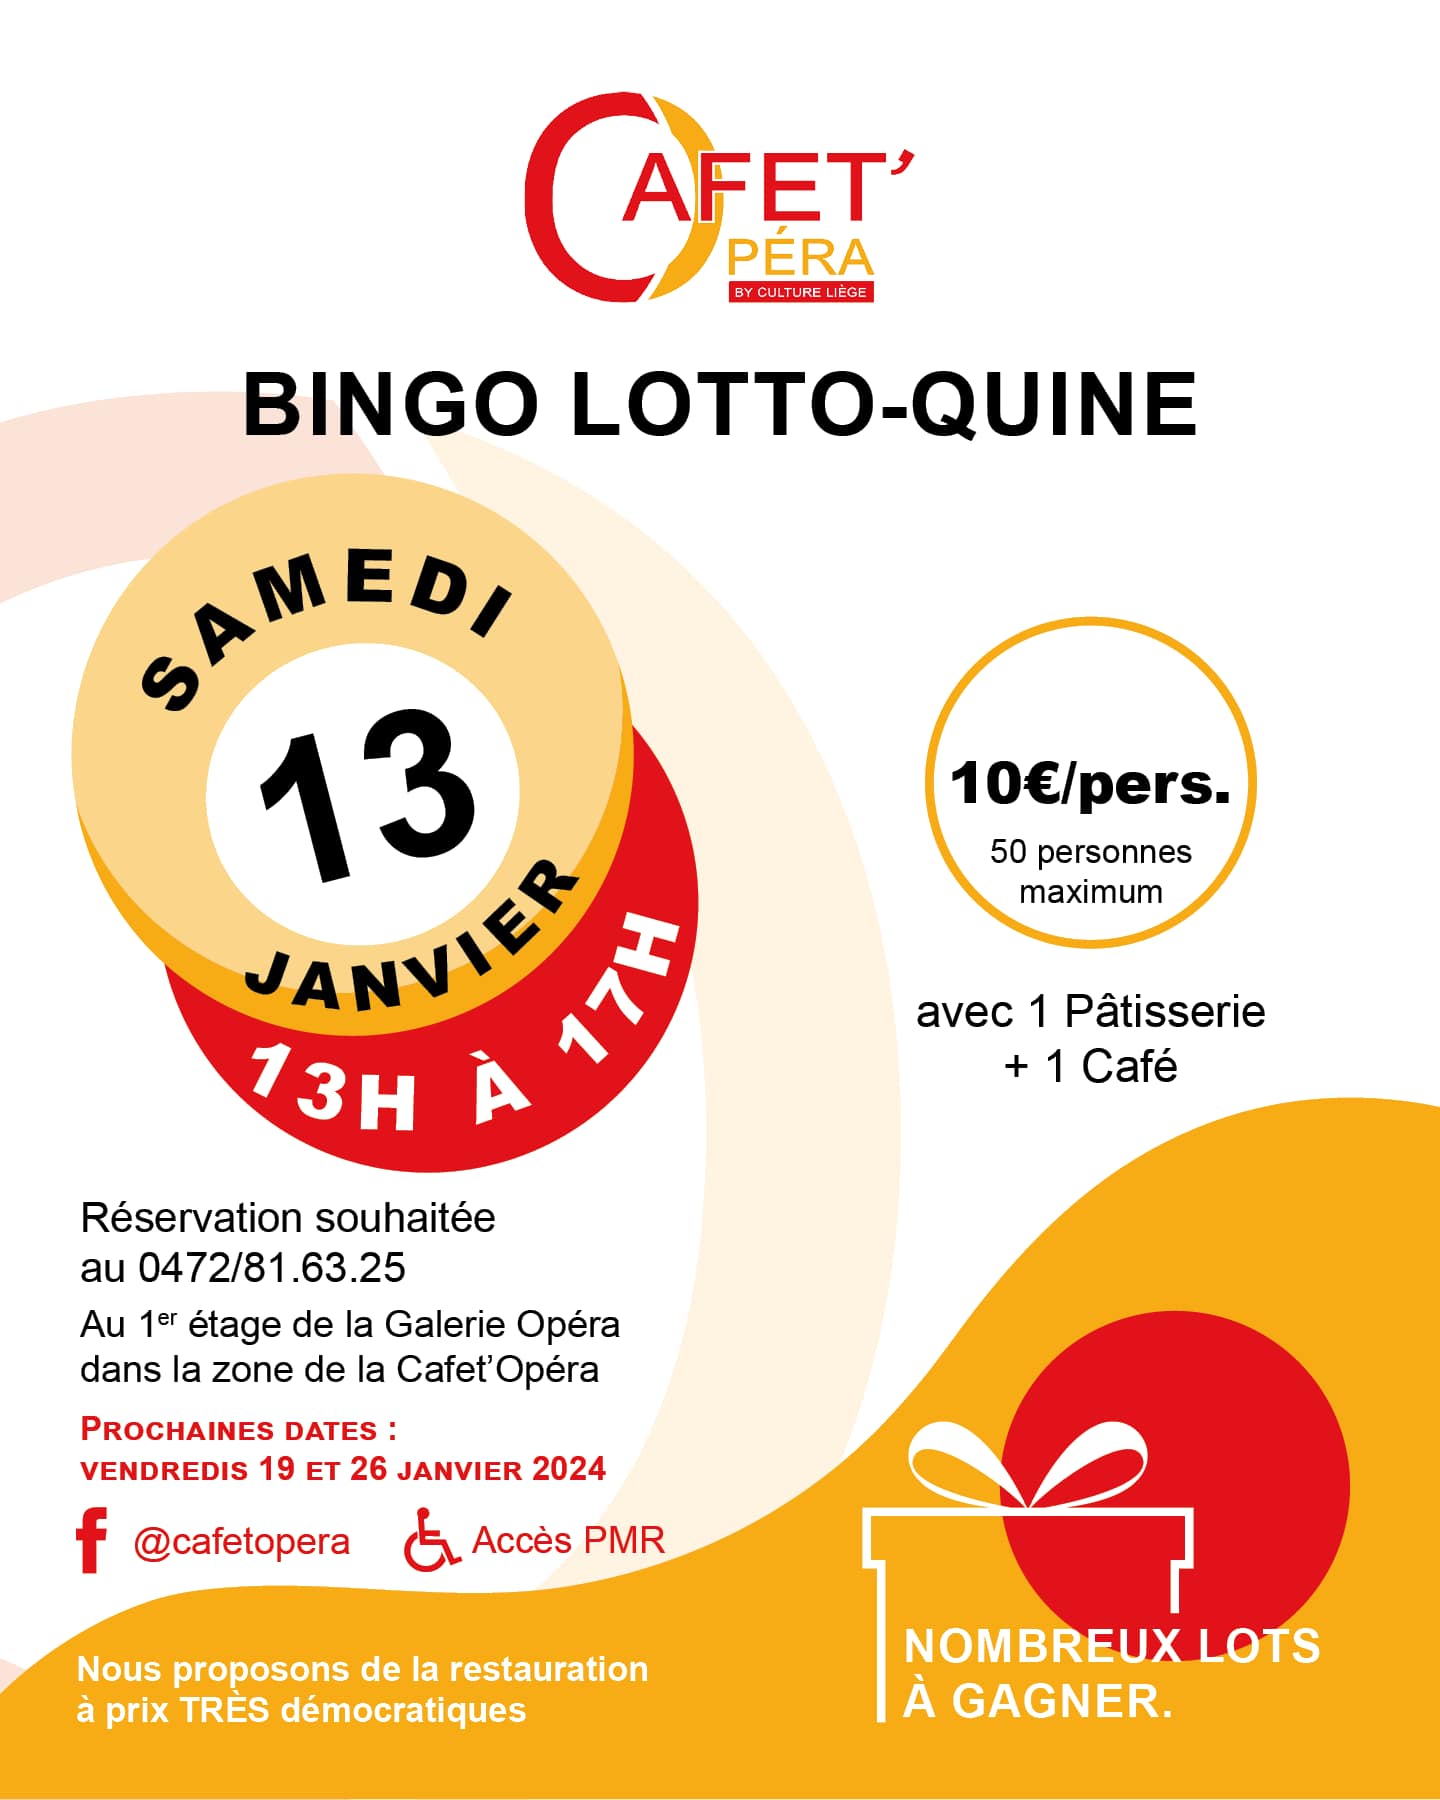 Bingo Lotto-Quine à la Cafet Opera à LIEGE